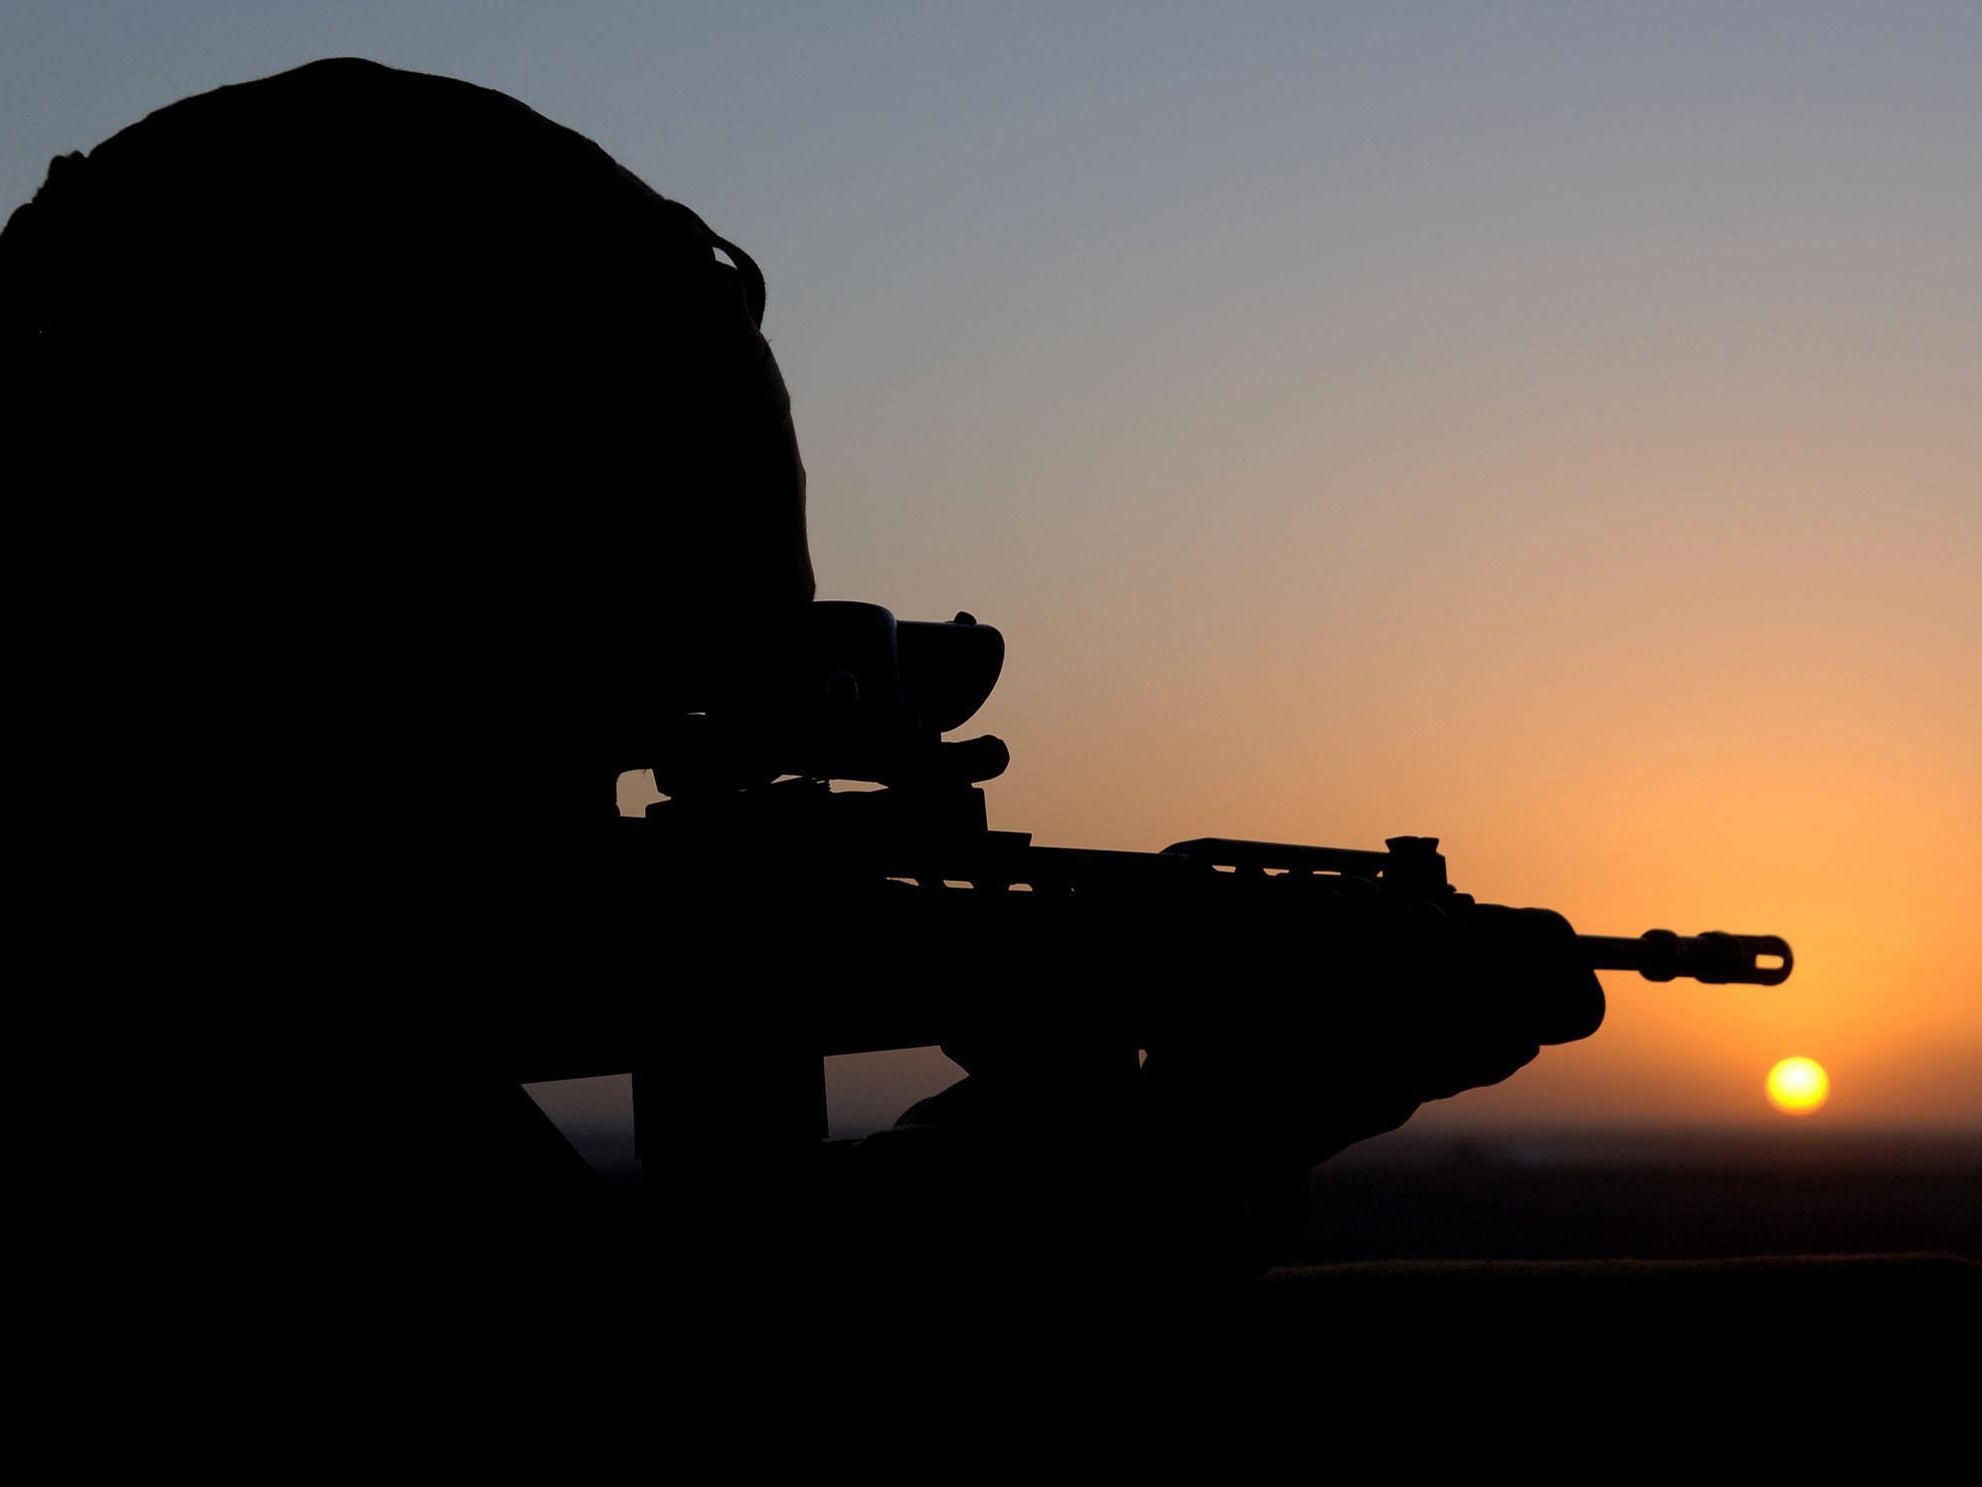 UK troop numbers in Afghanistan could rise following Trump pressure